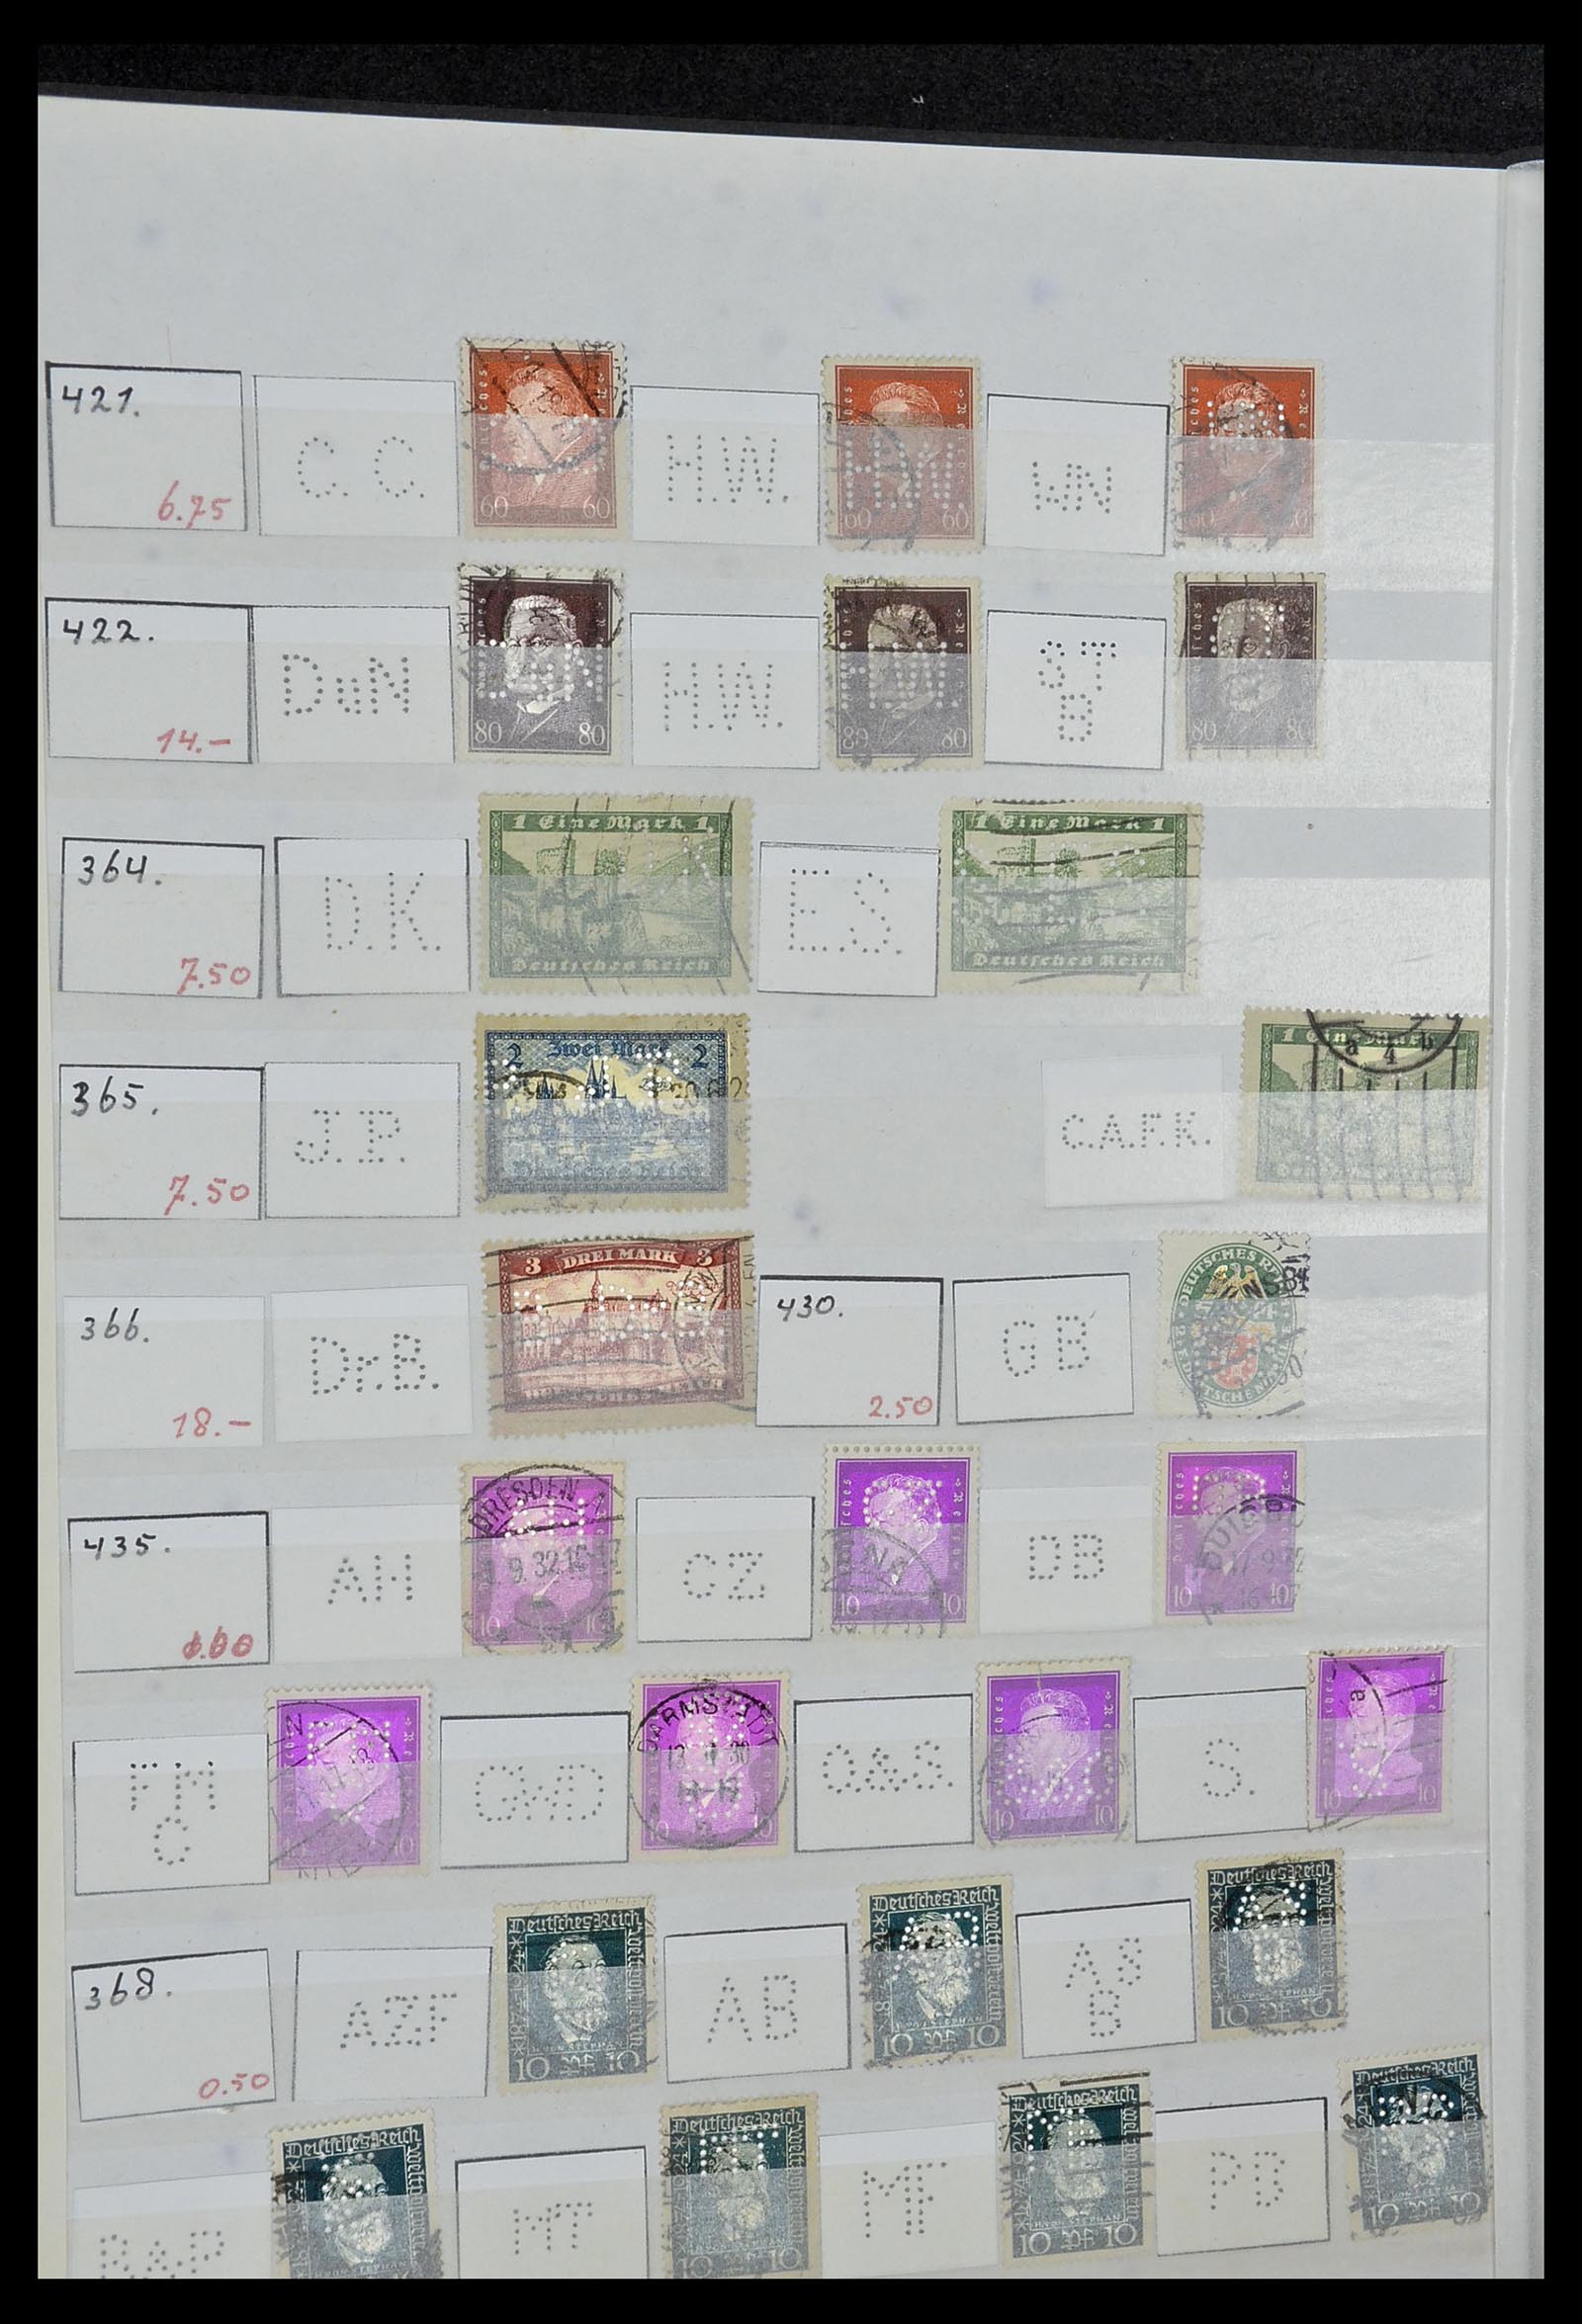 34071 042 - Stamp collection 34071 German Reich perfins 1923-1930.